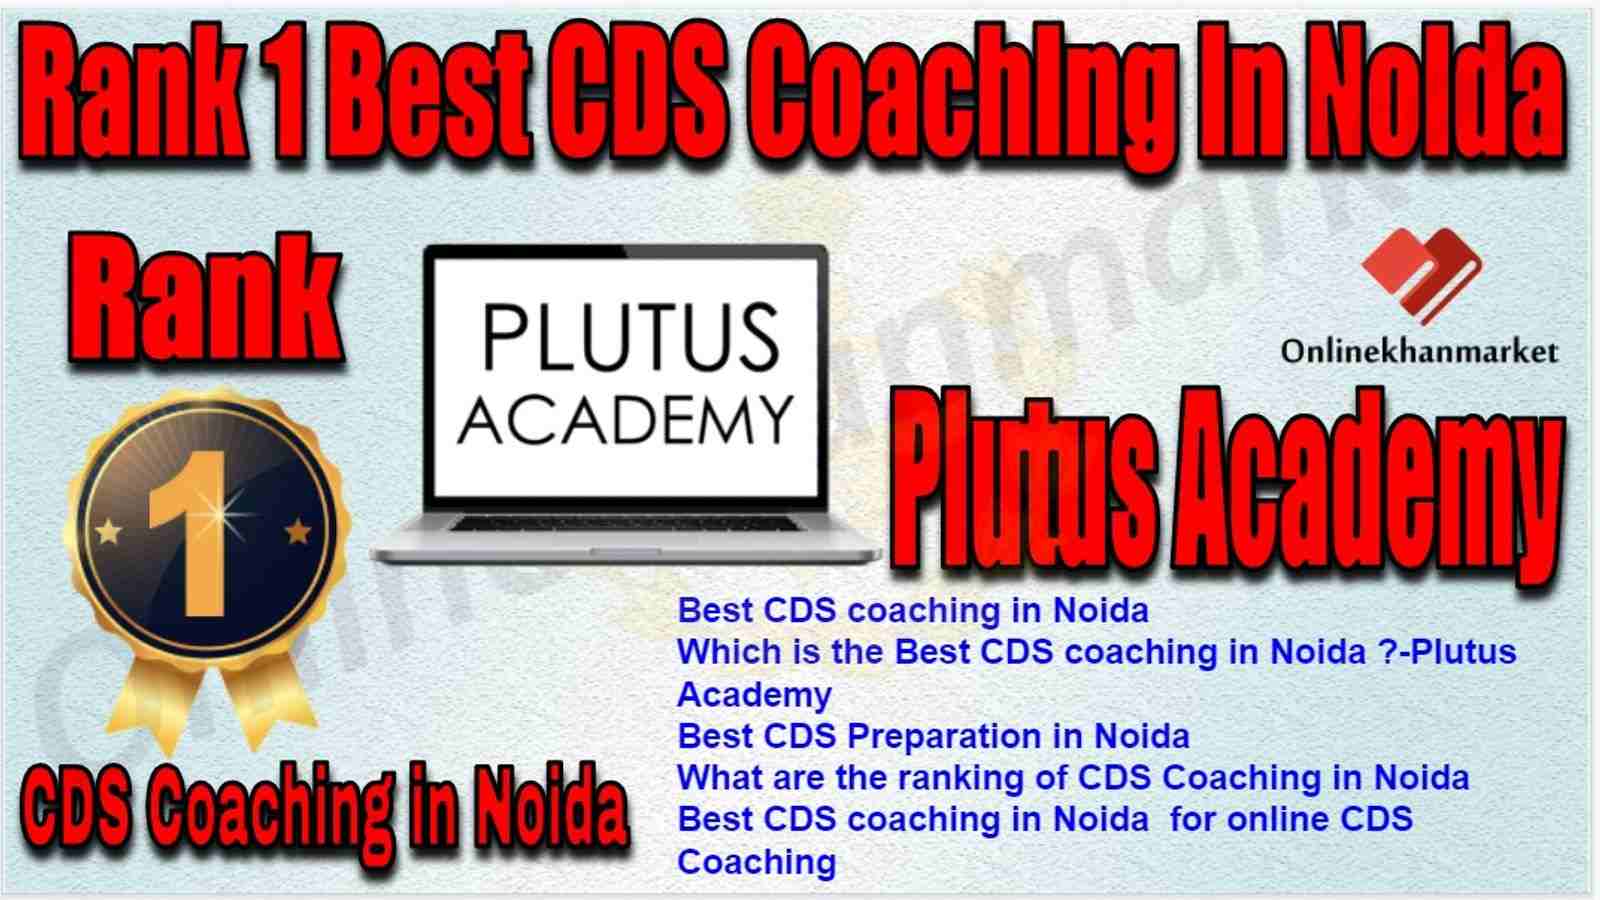 Rank 1 Best CDS Coaching in Noida